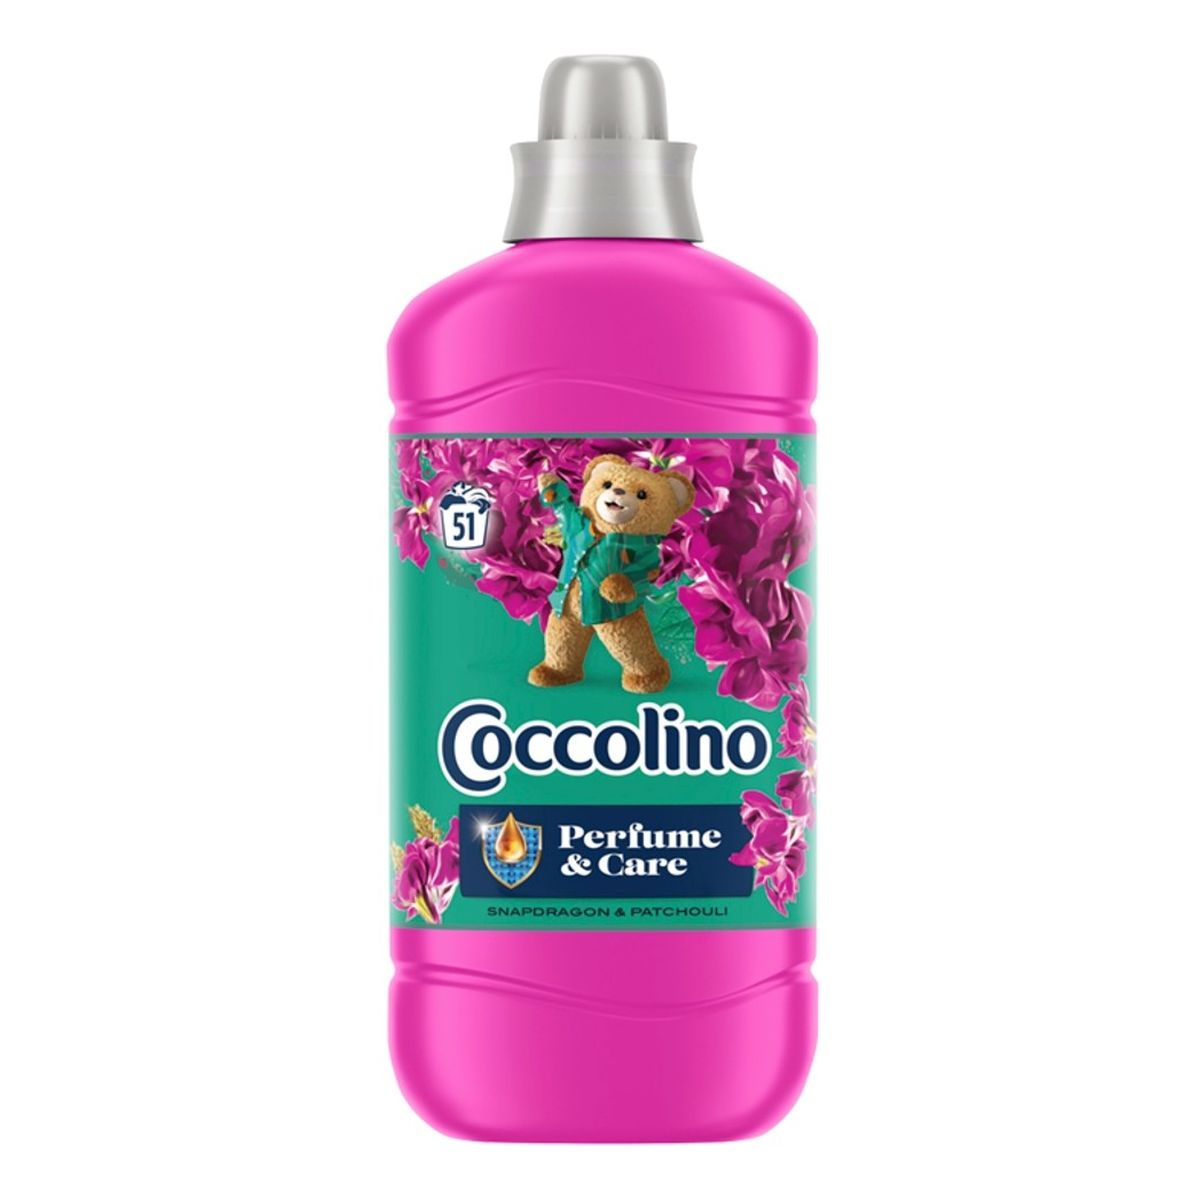 Coccolino Perfume & Care Płyn do płukania tkanin Snapdragon&Patchouli (51 prań) 1275ml